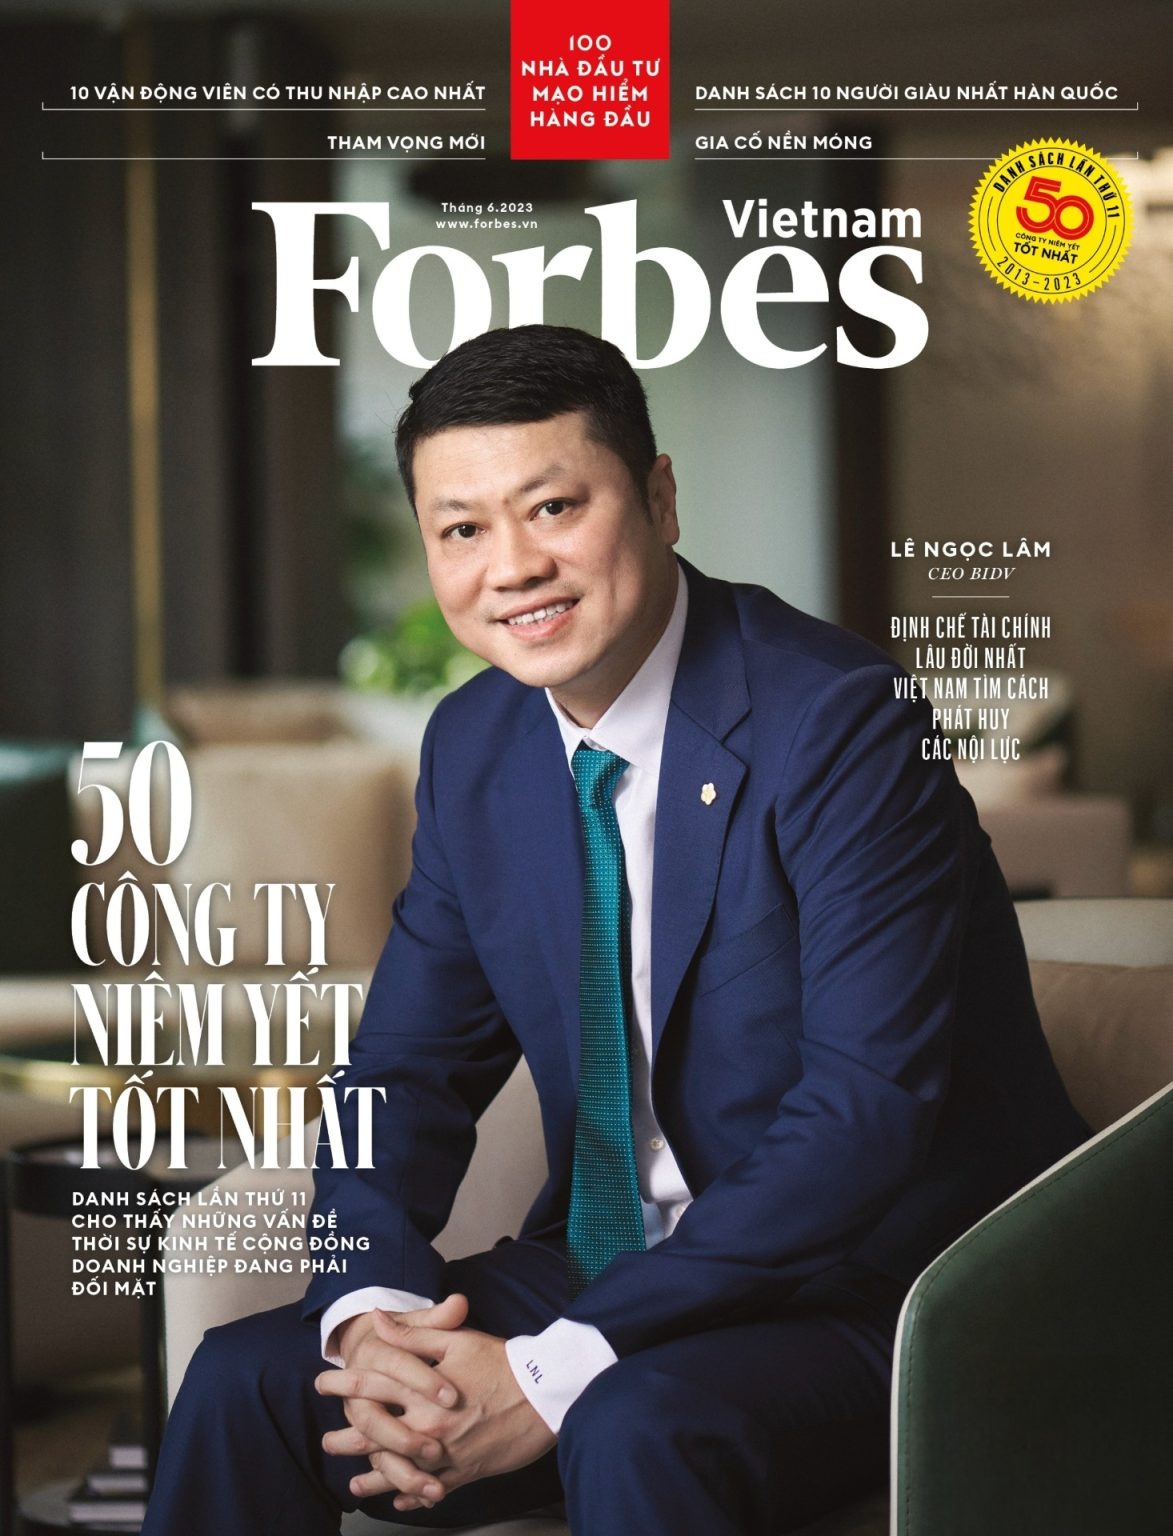 Forbes Việt Nam công bố “Danh sách 50 công ty niêm yết tốt nhất” năm 2023